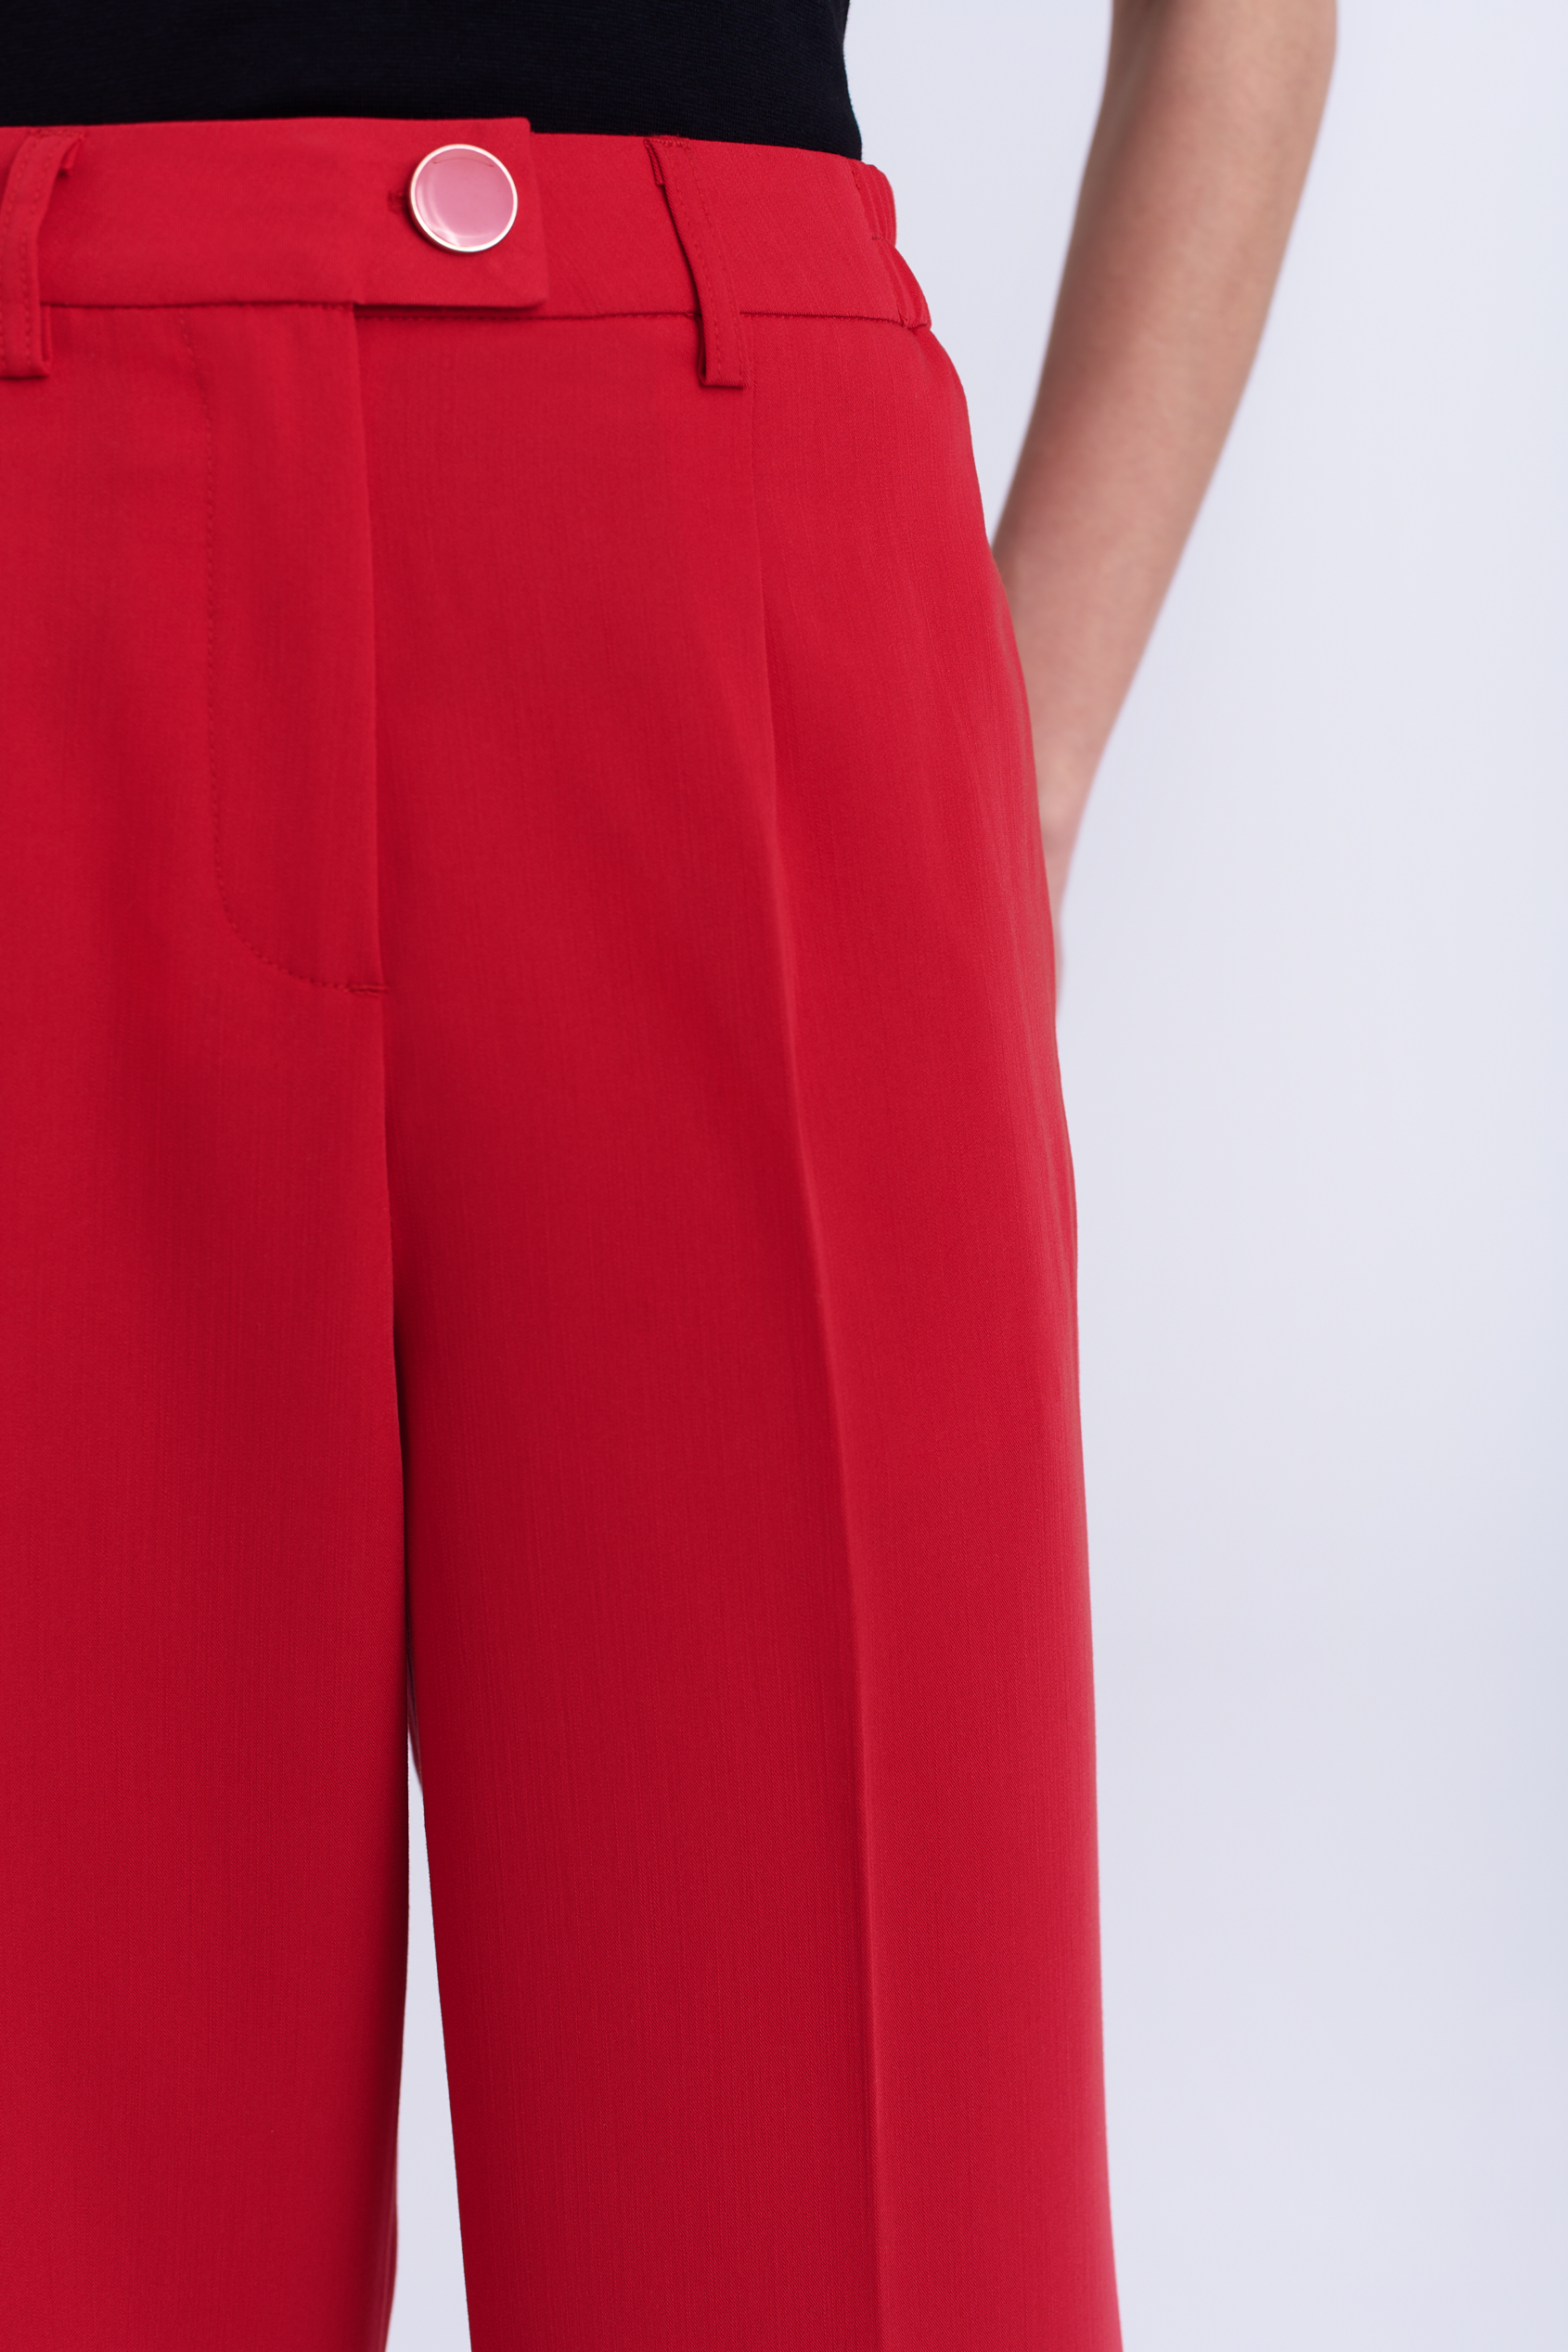 Eleganckie czerwone spodnie